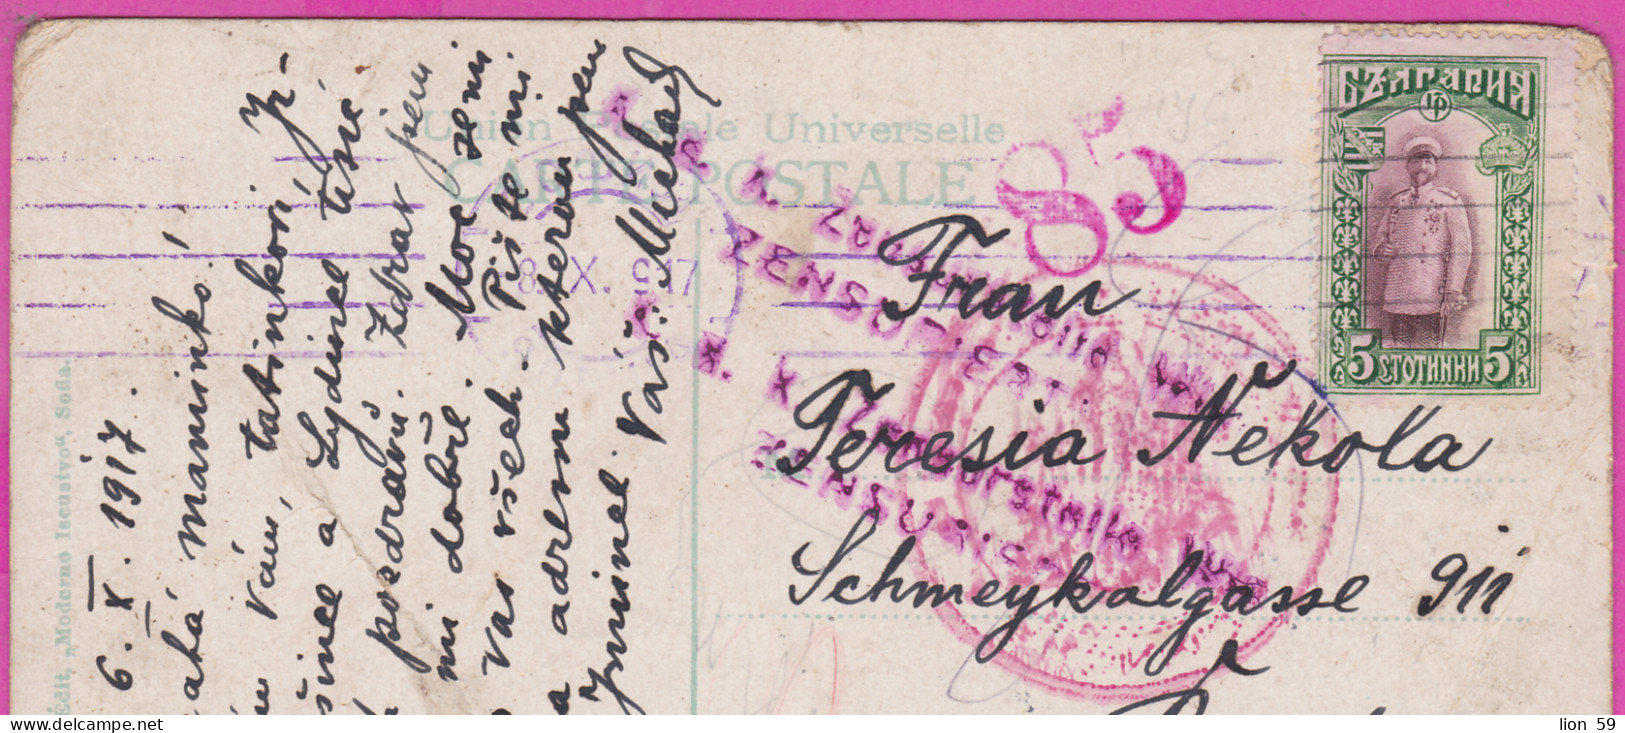 311119 / Bulgaria - Sofia - The City Garden, Theater PC WW1 1917 USED 5 St. King Ferdinand To Budweis Austria Bohemia - WO1